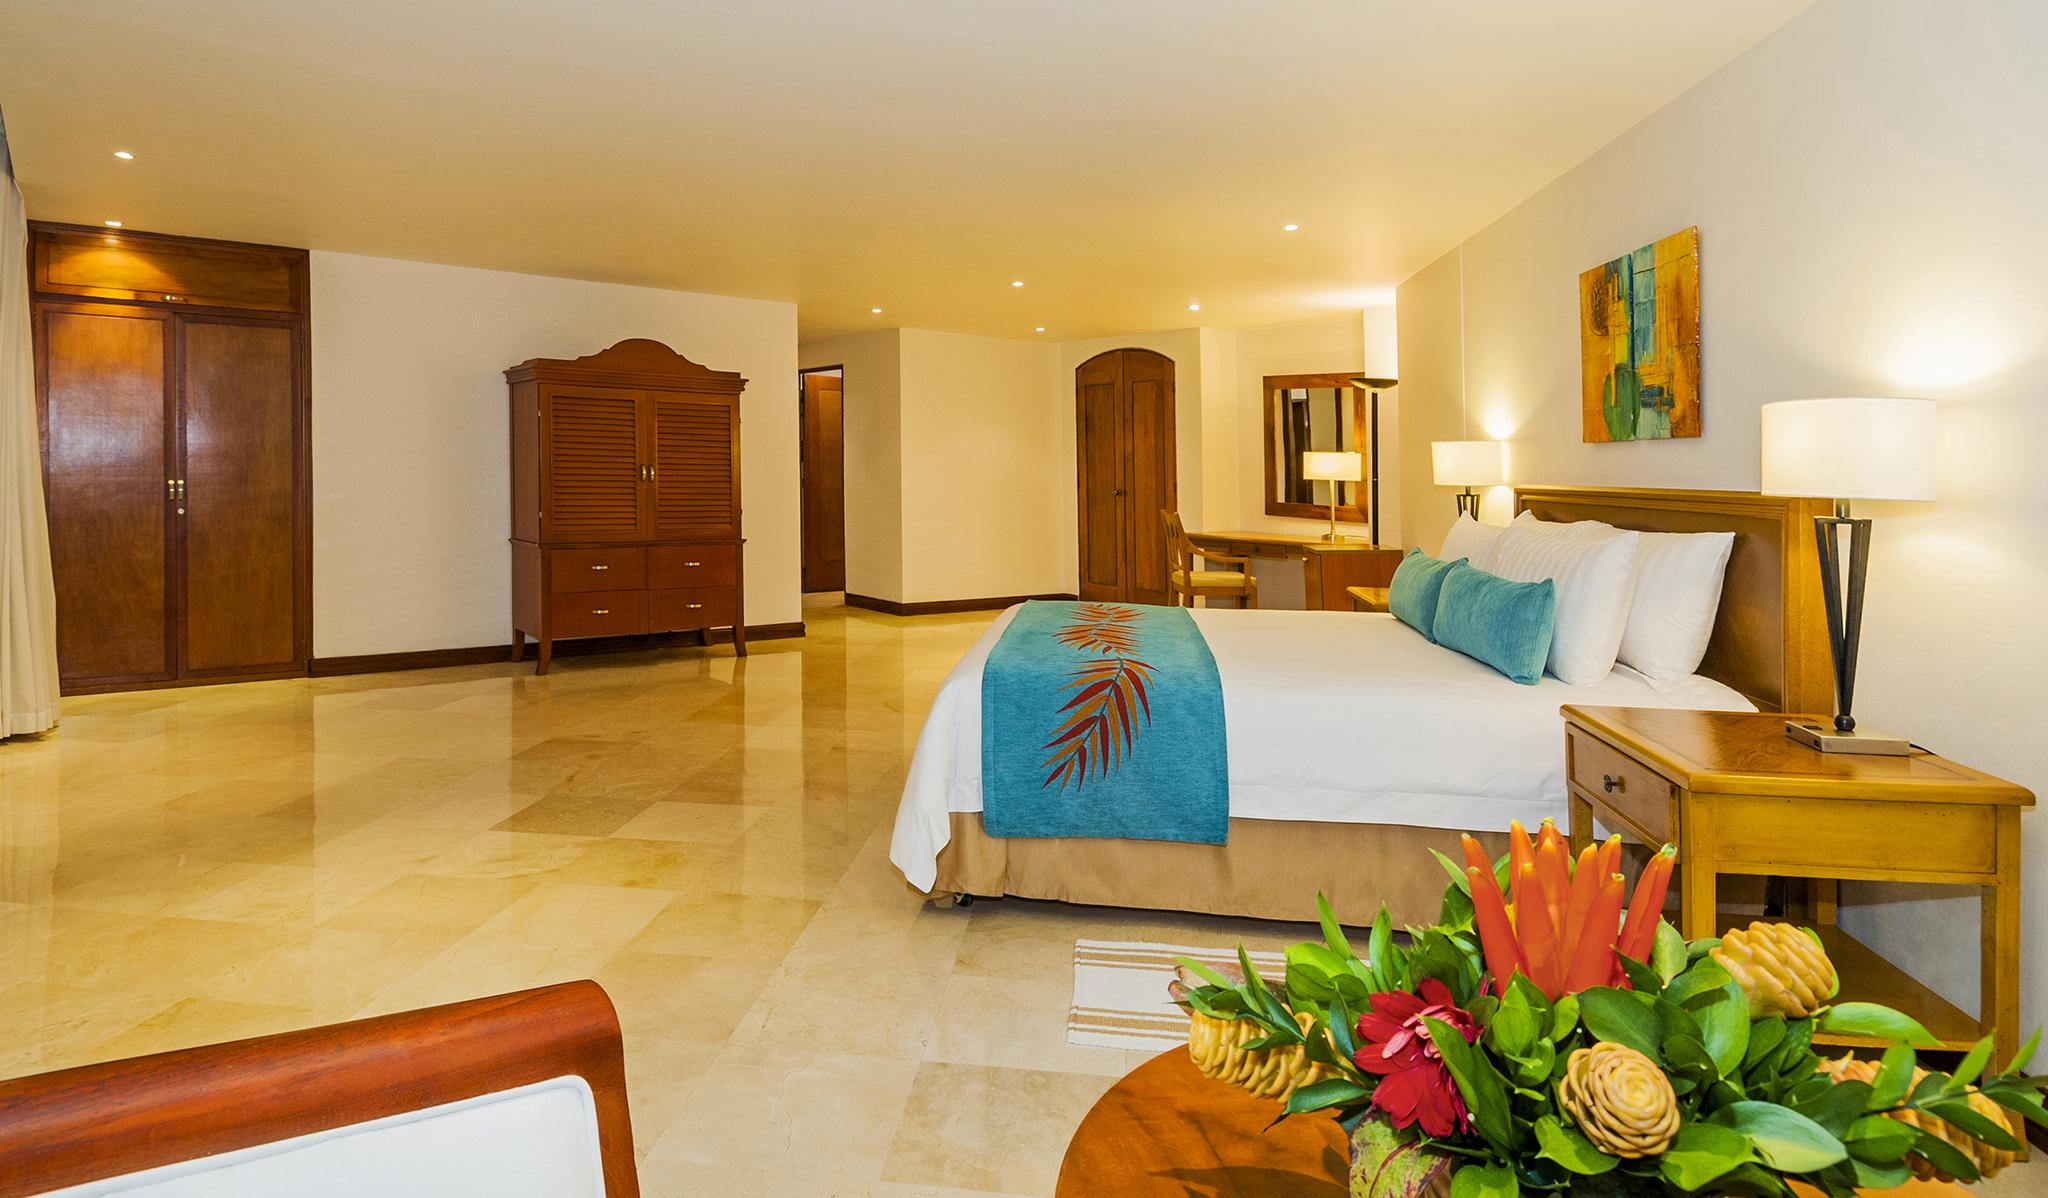 Hotel Almirante Cartagena Colombia Екстериор снимка